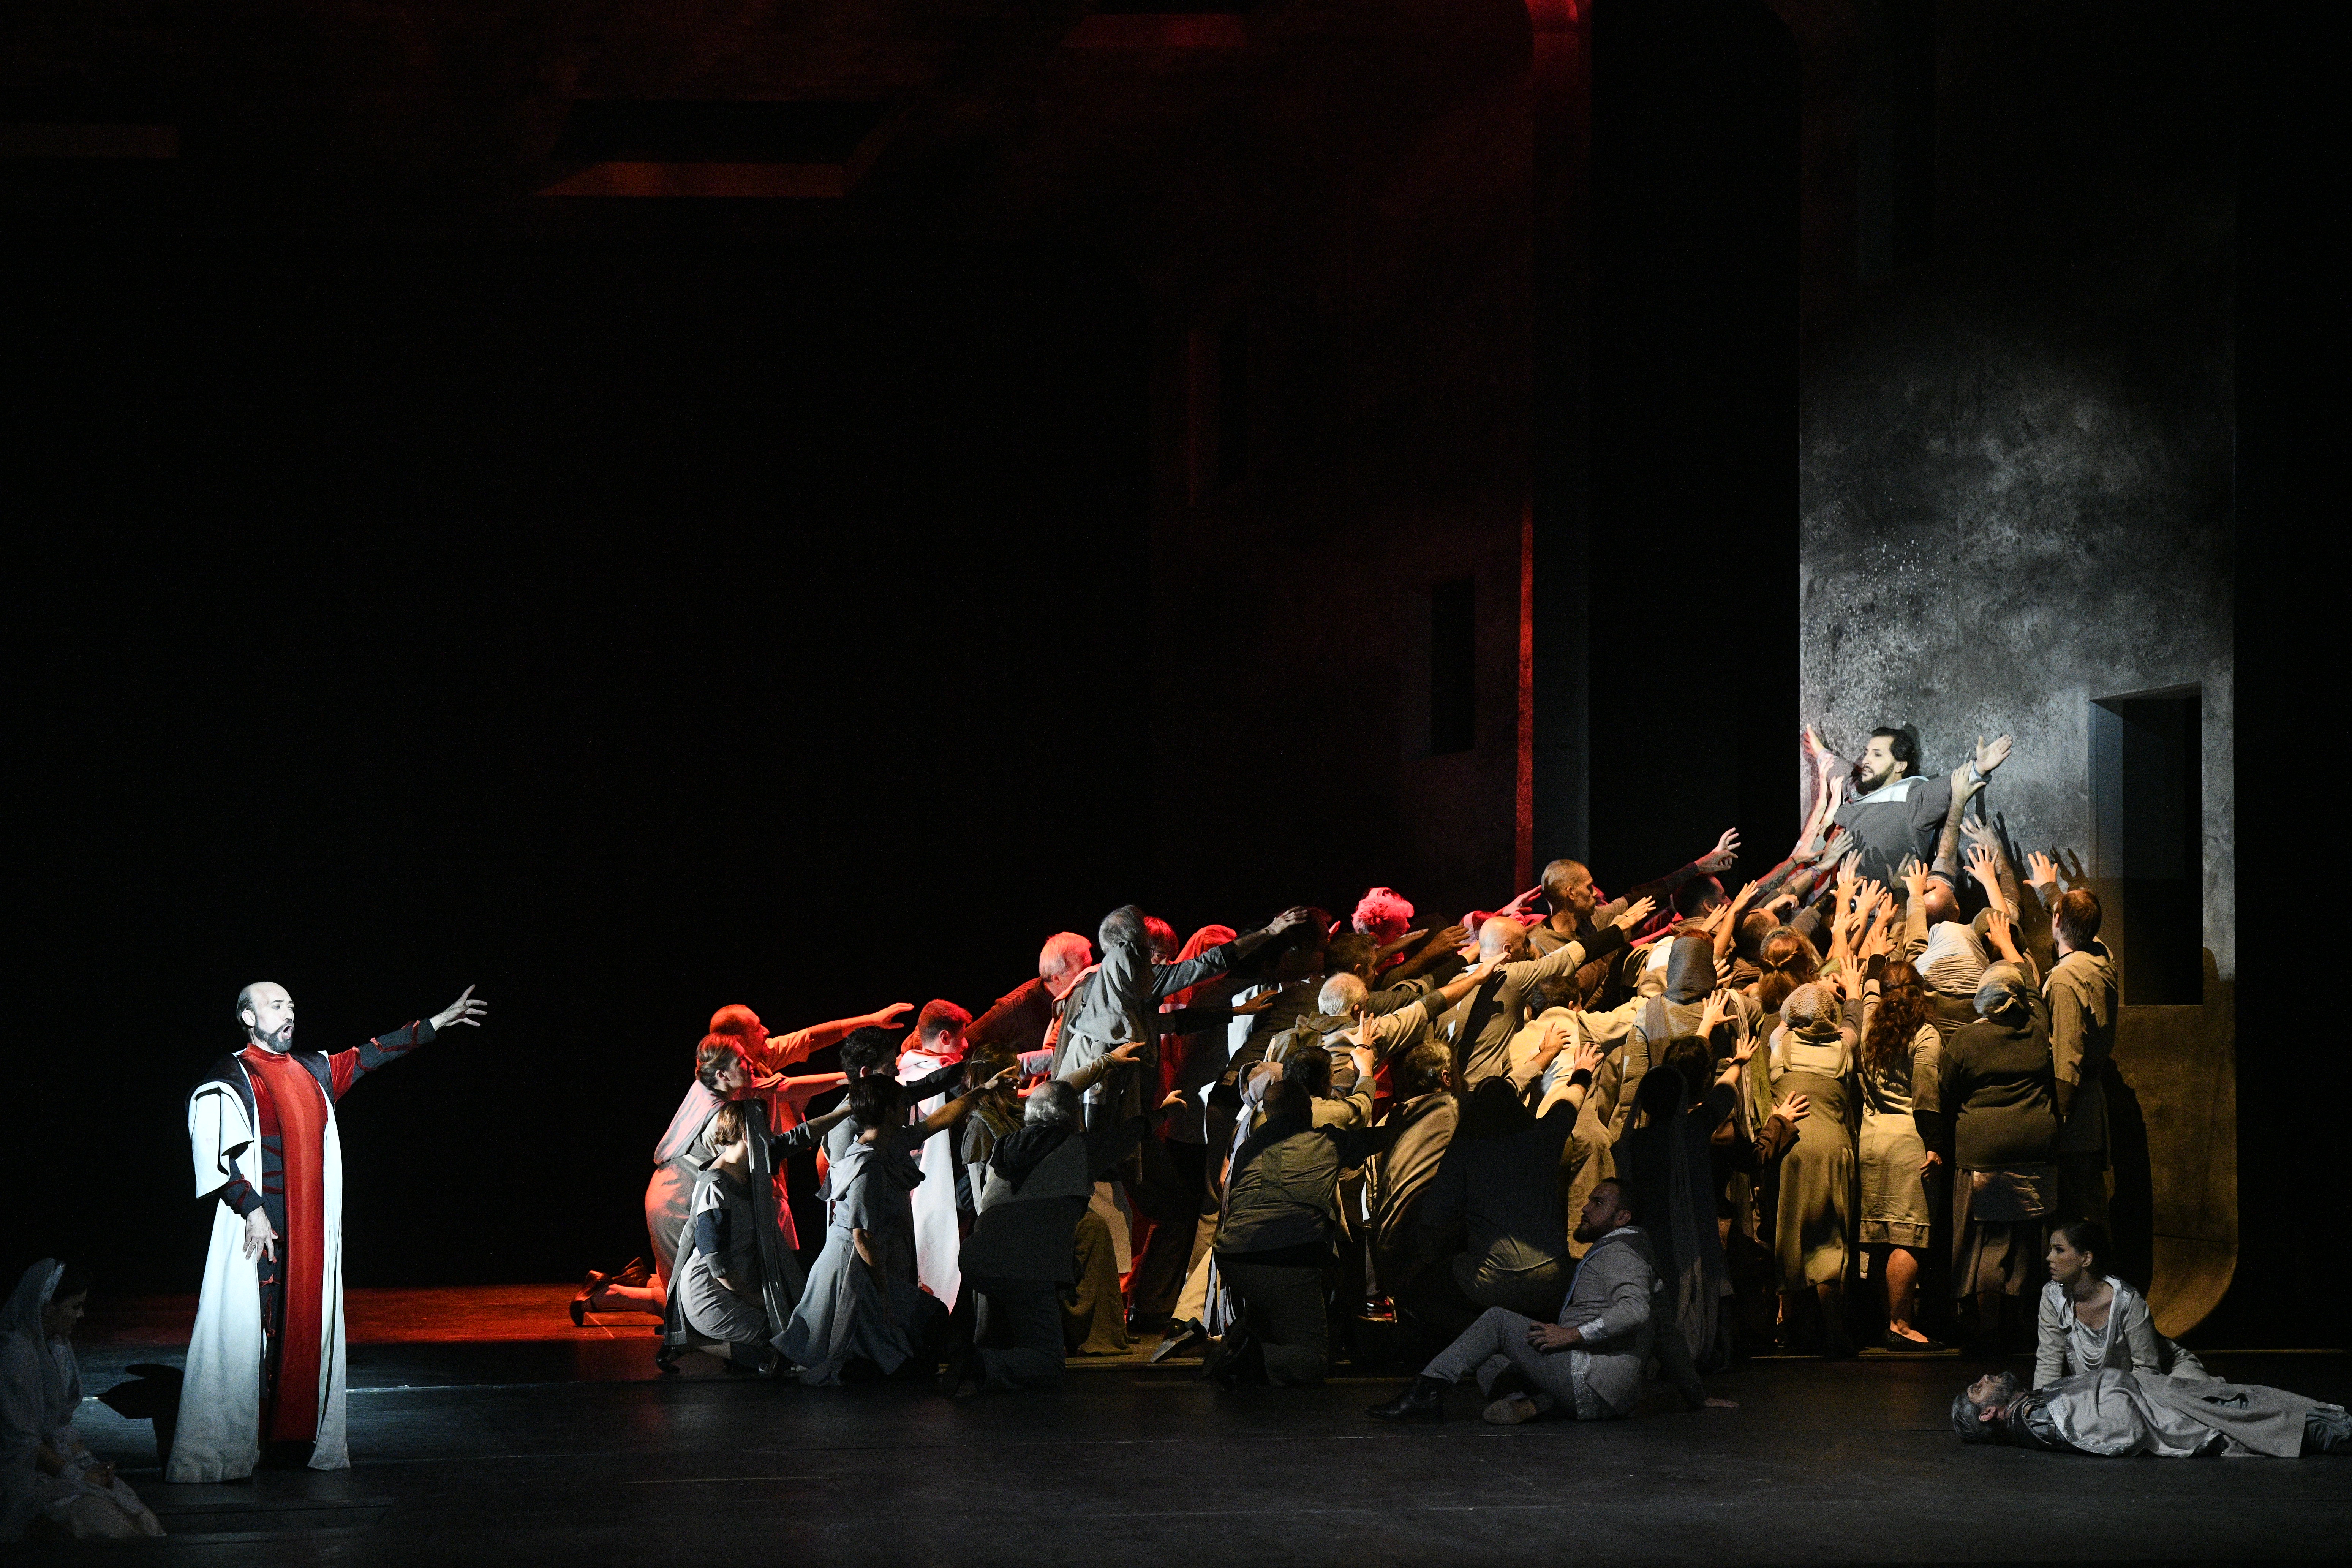 ABAO Presenta el estreno absoluto en España de la ópera Jérusalem de Verdi